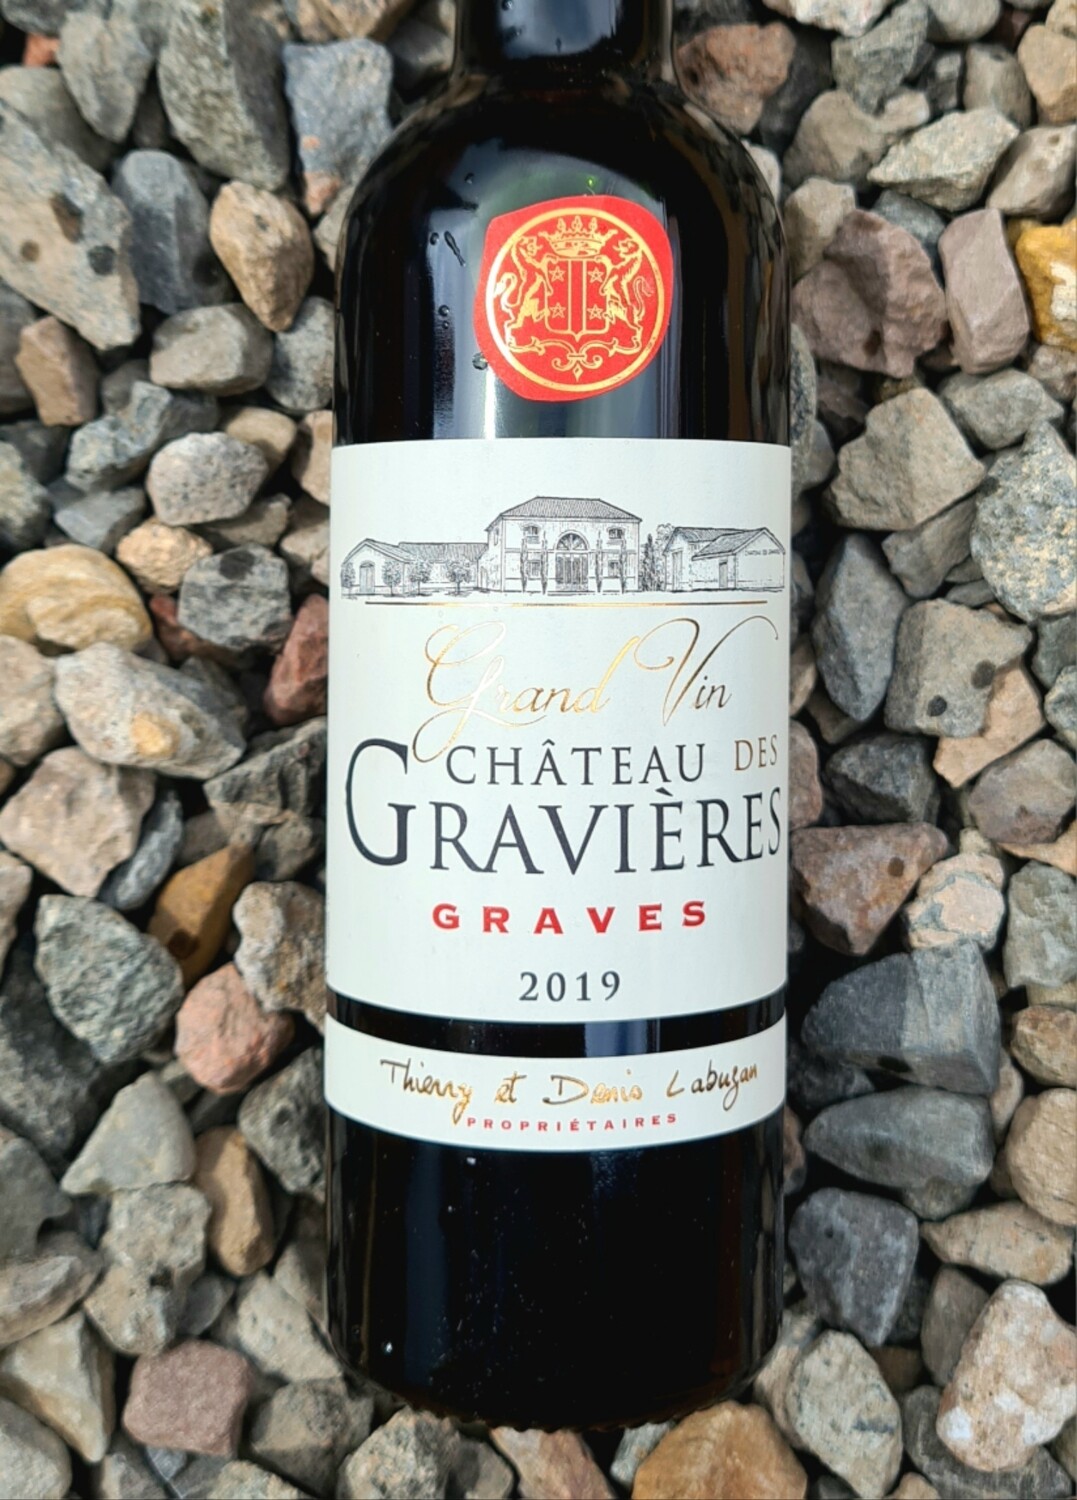 Chateau des Gravieres 2019 Graves Half Bottle